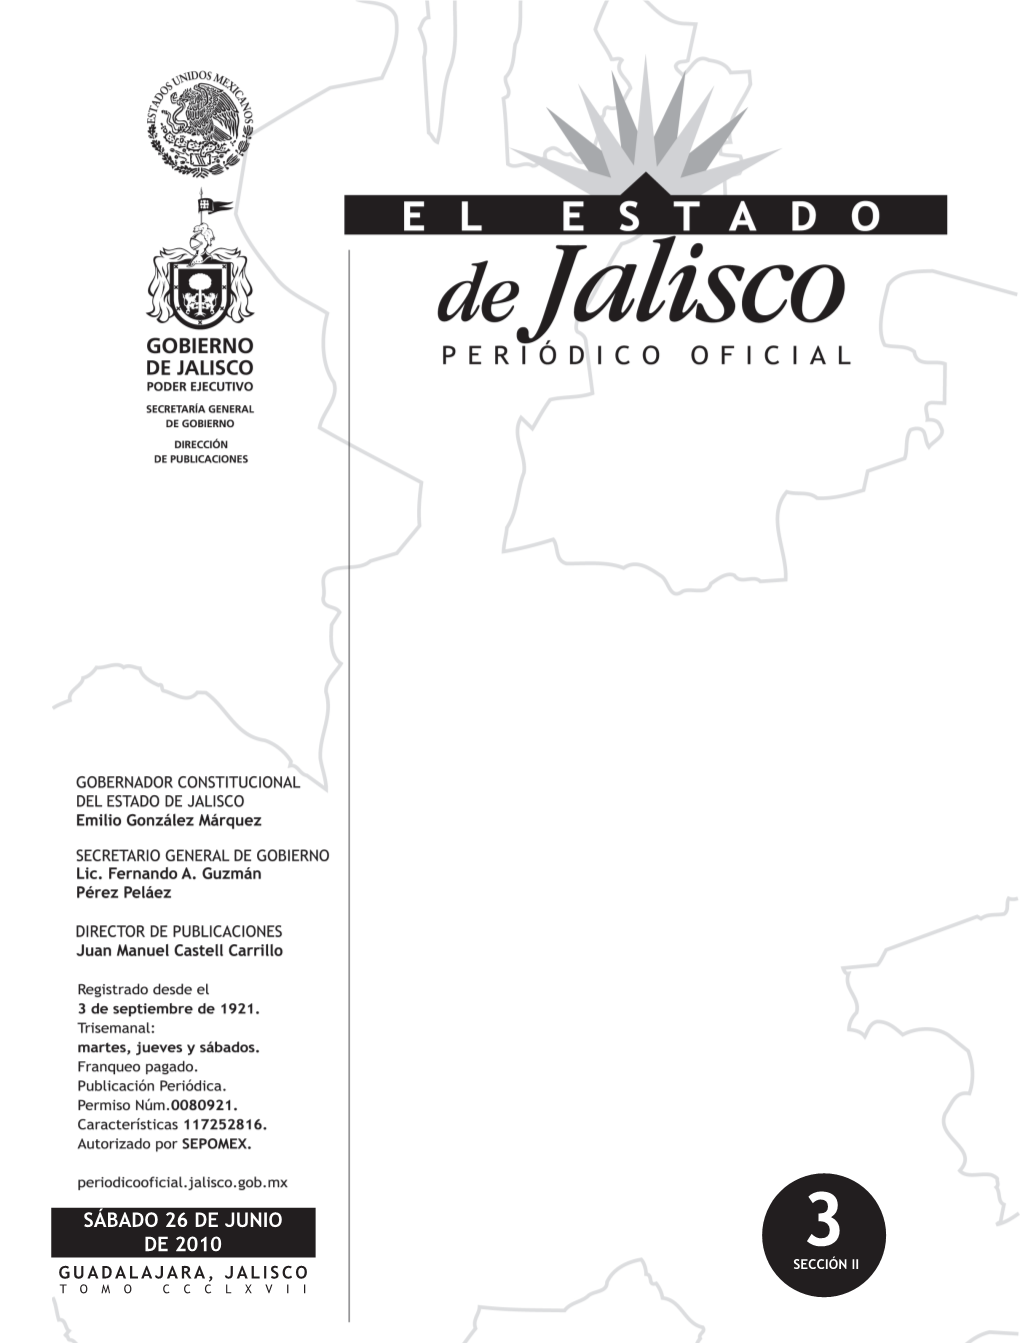 Sábado 26 De Junio De 2010 3 Guadalajara, Jalisco Sección Ii Tomo Ccclxvii Gobernador Constitucional Del Estado De Jalisco C.P